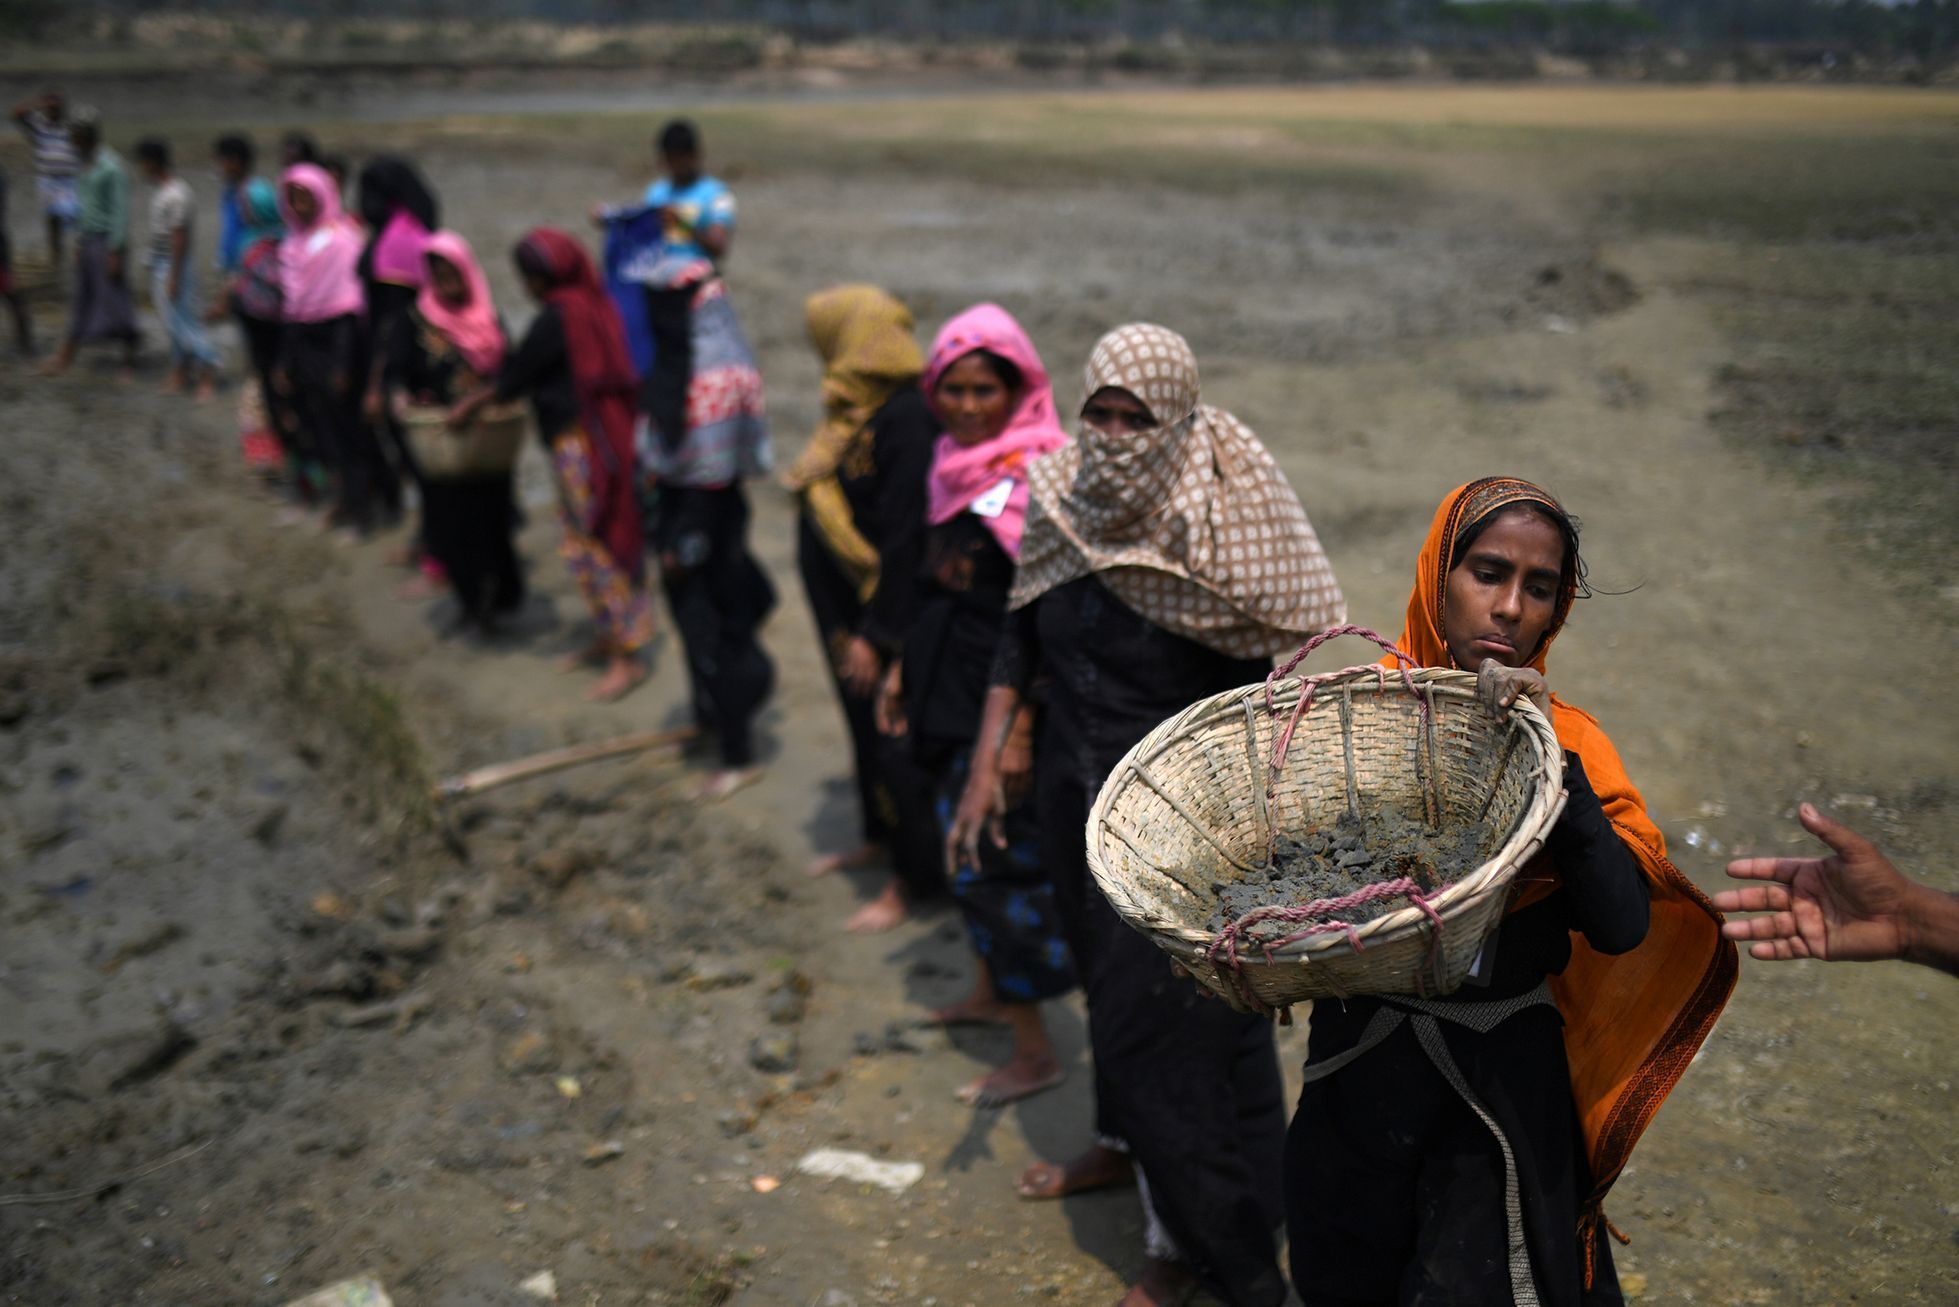 Fotogalerie / Rohingové v Bangladéši / Reuters / 30